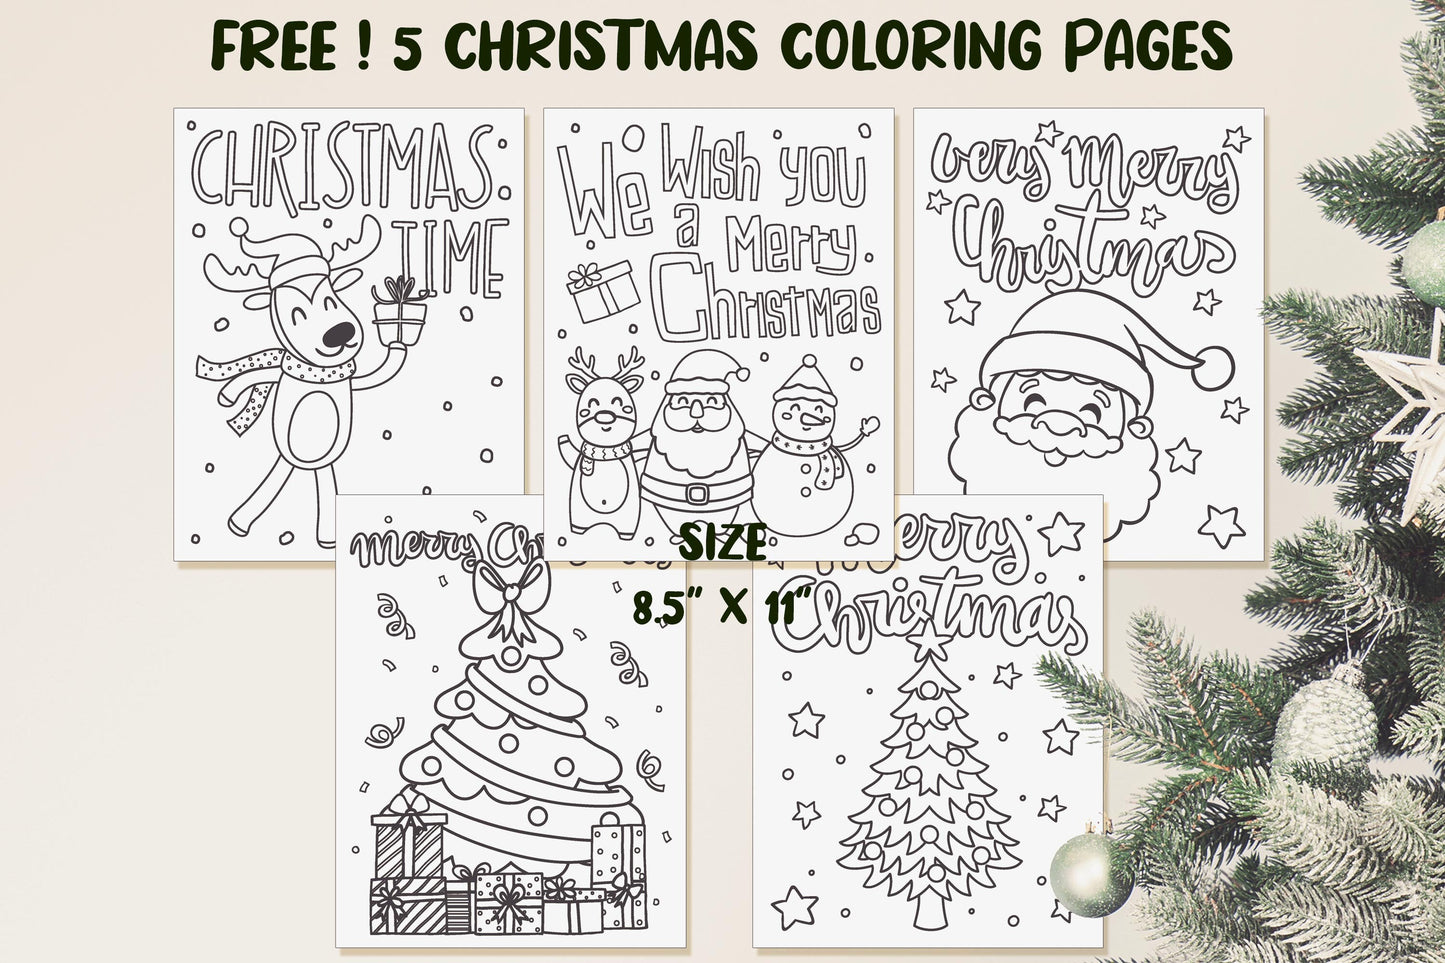 Christmas Poster, Huge Christmas Printable Kids Coloring Poster, Giant Christmas Coloring Pages, Winter Poster, 5 Coloring Pages+3 Placemats